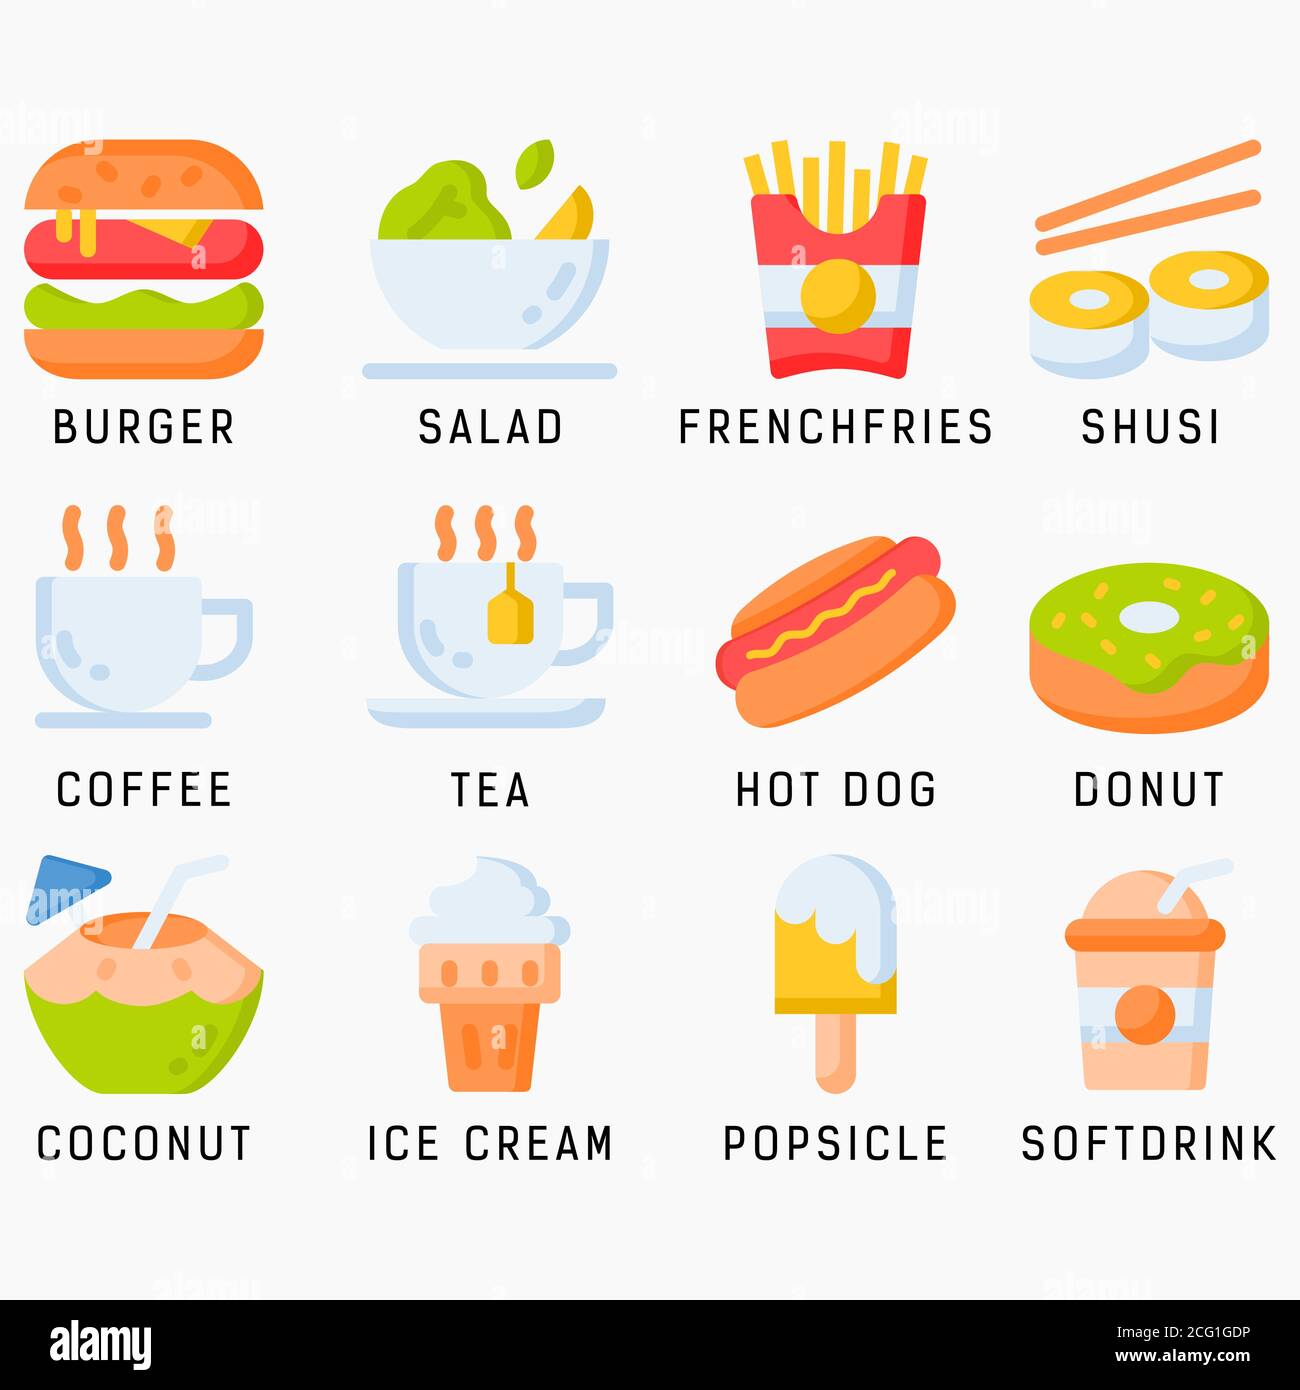 Conjunto de iconos de comida y bebida de color plano con fondo blanco aislado. Comida y bebida vector icono conjunto, hamburguesa, coco, ensalada, perrito caliente, shusi Ilustración del Vector